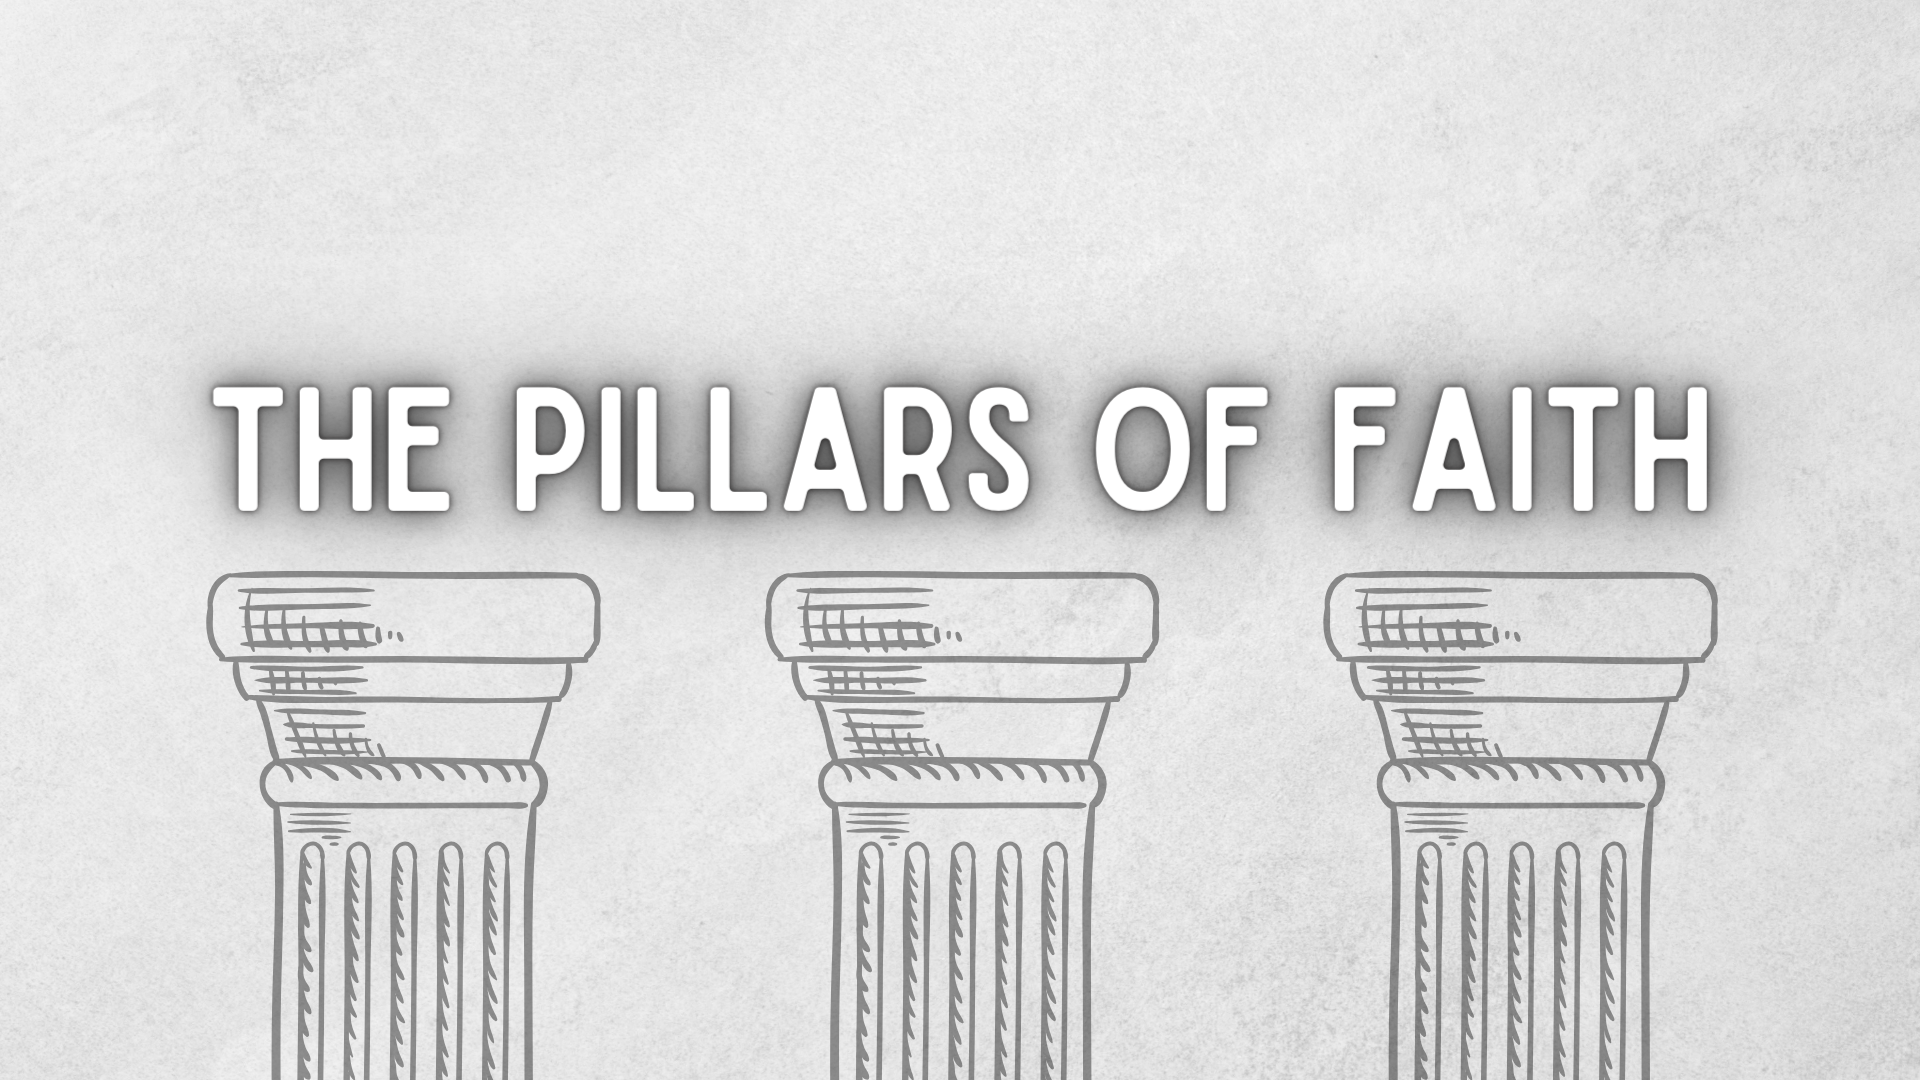 The Pillars of Faith